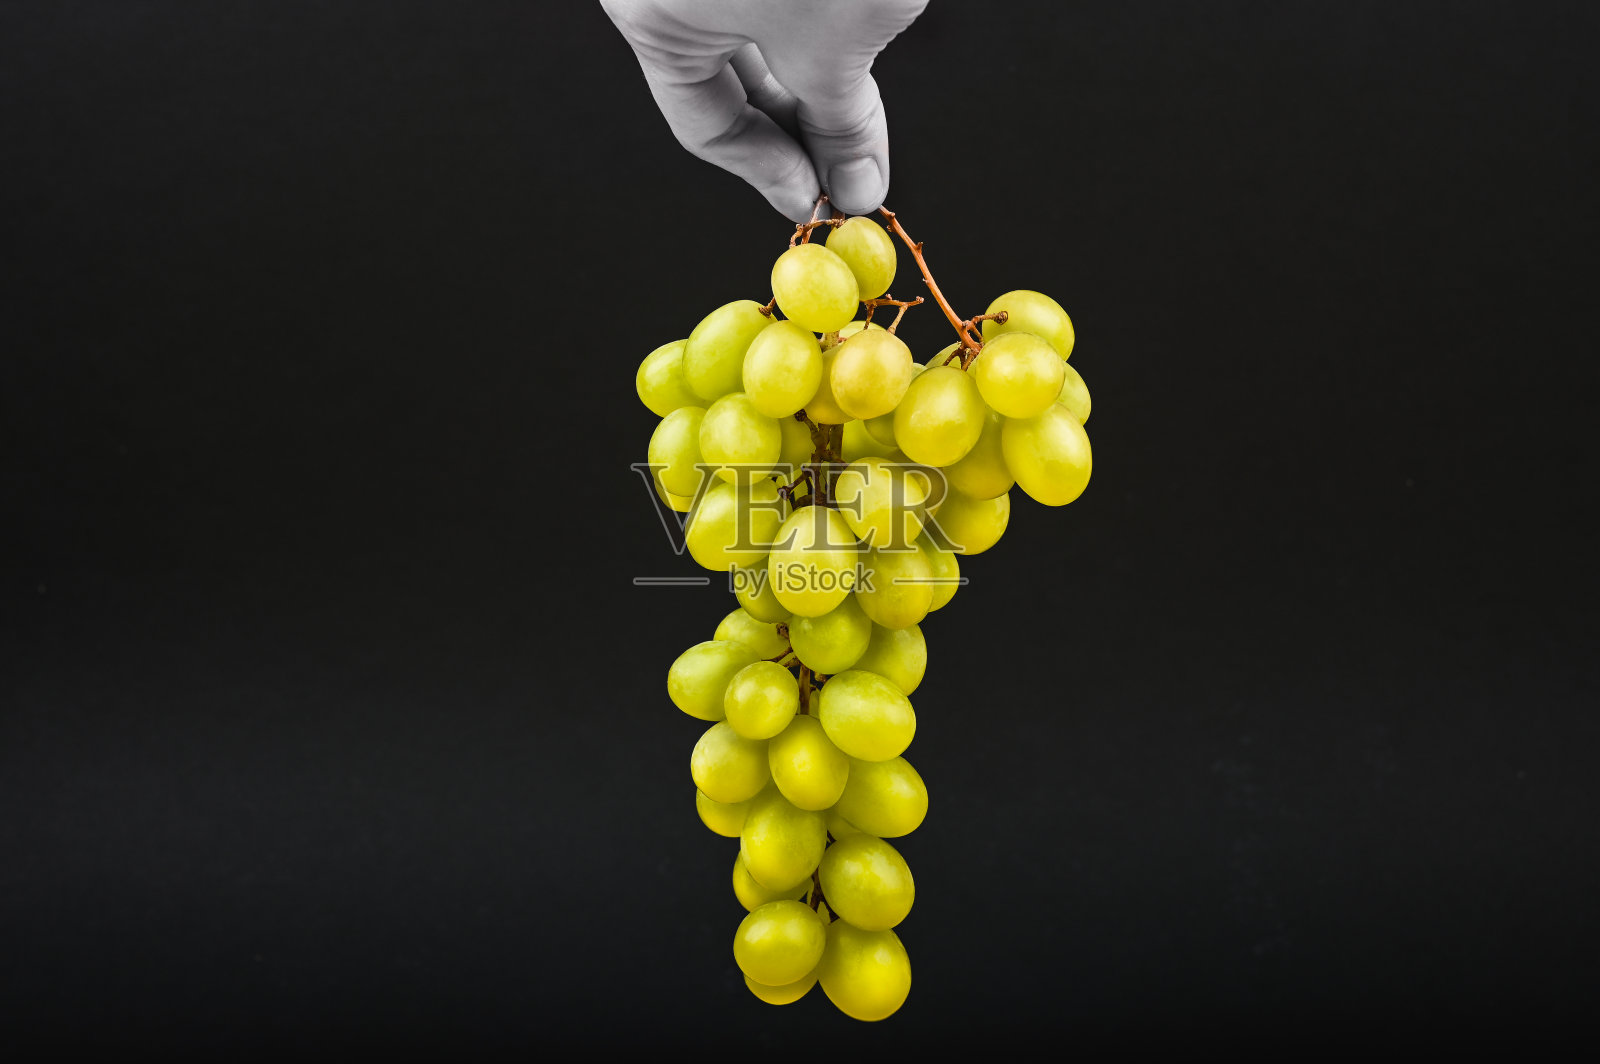 黑色背景上的黄色葡萄。在黑色背景下，一只手在空中举着葡萄。体积酒厂。一串黄色的葡萄藤照片摄影图片